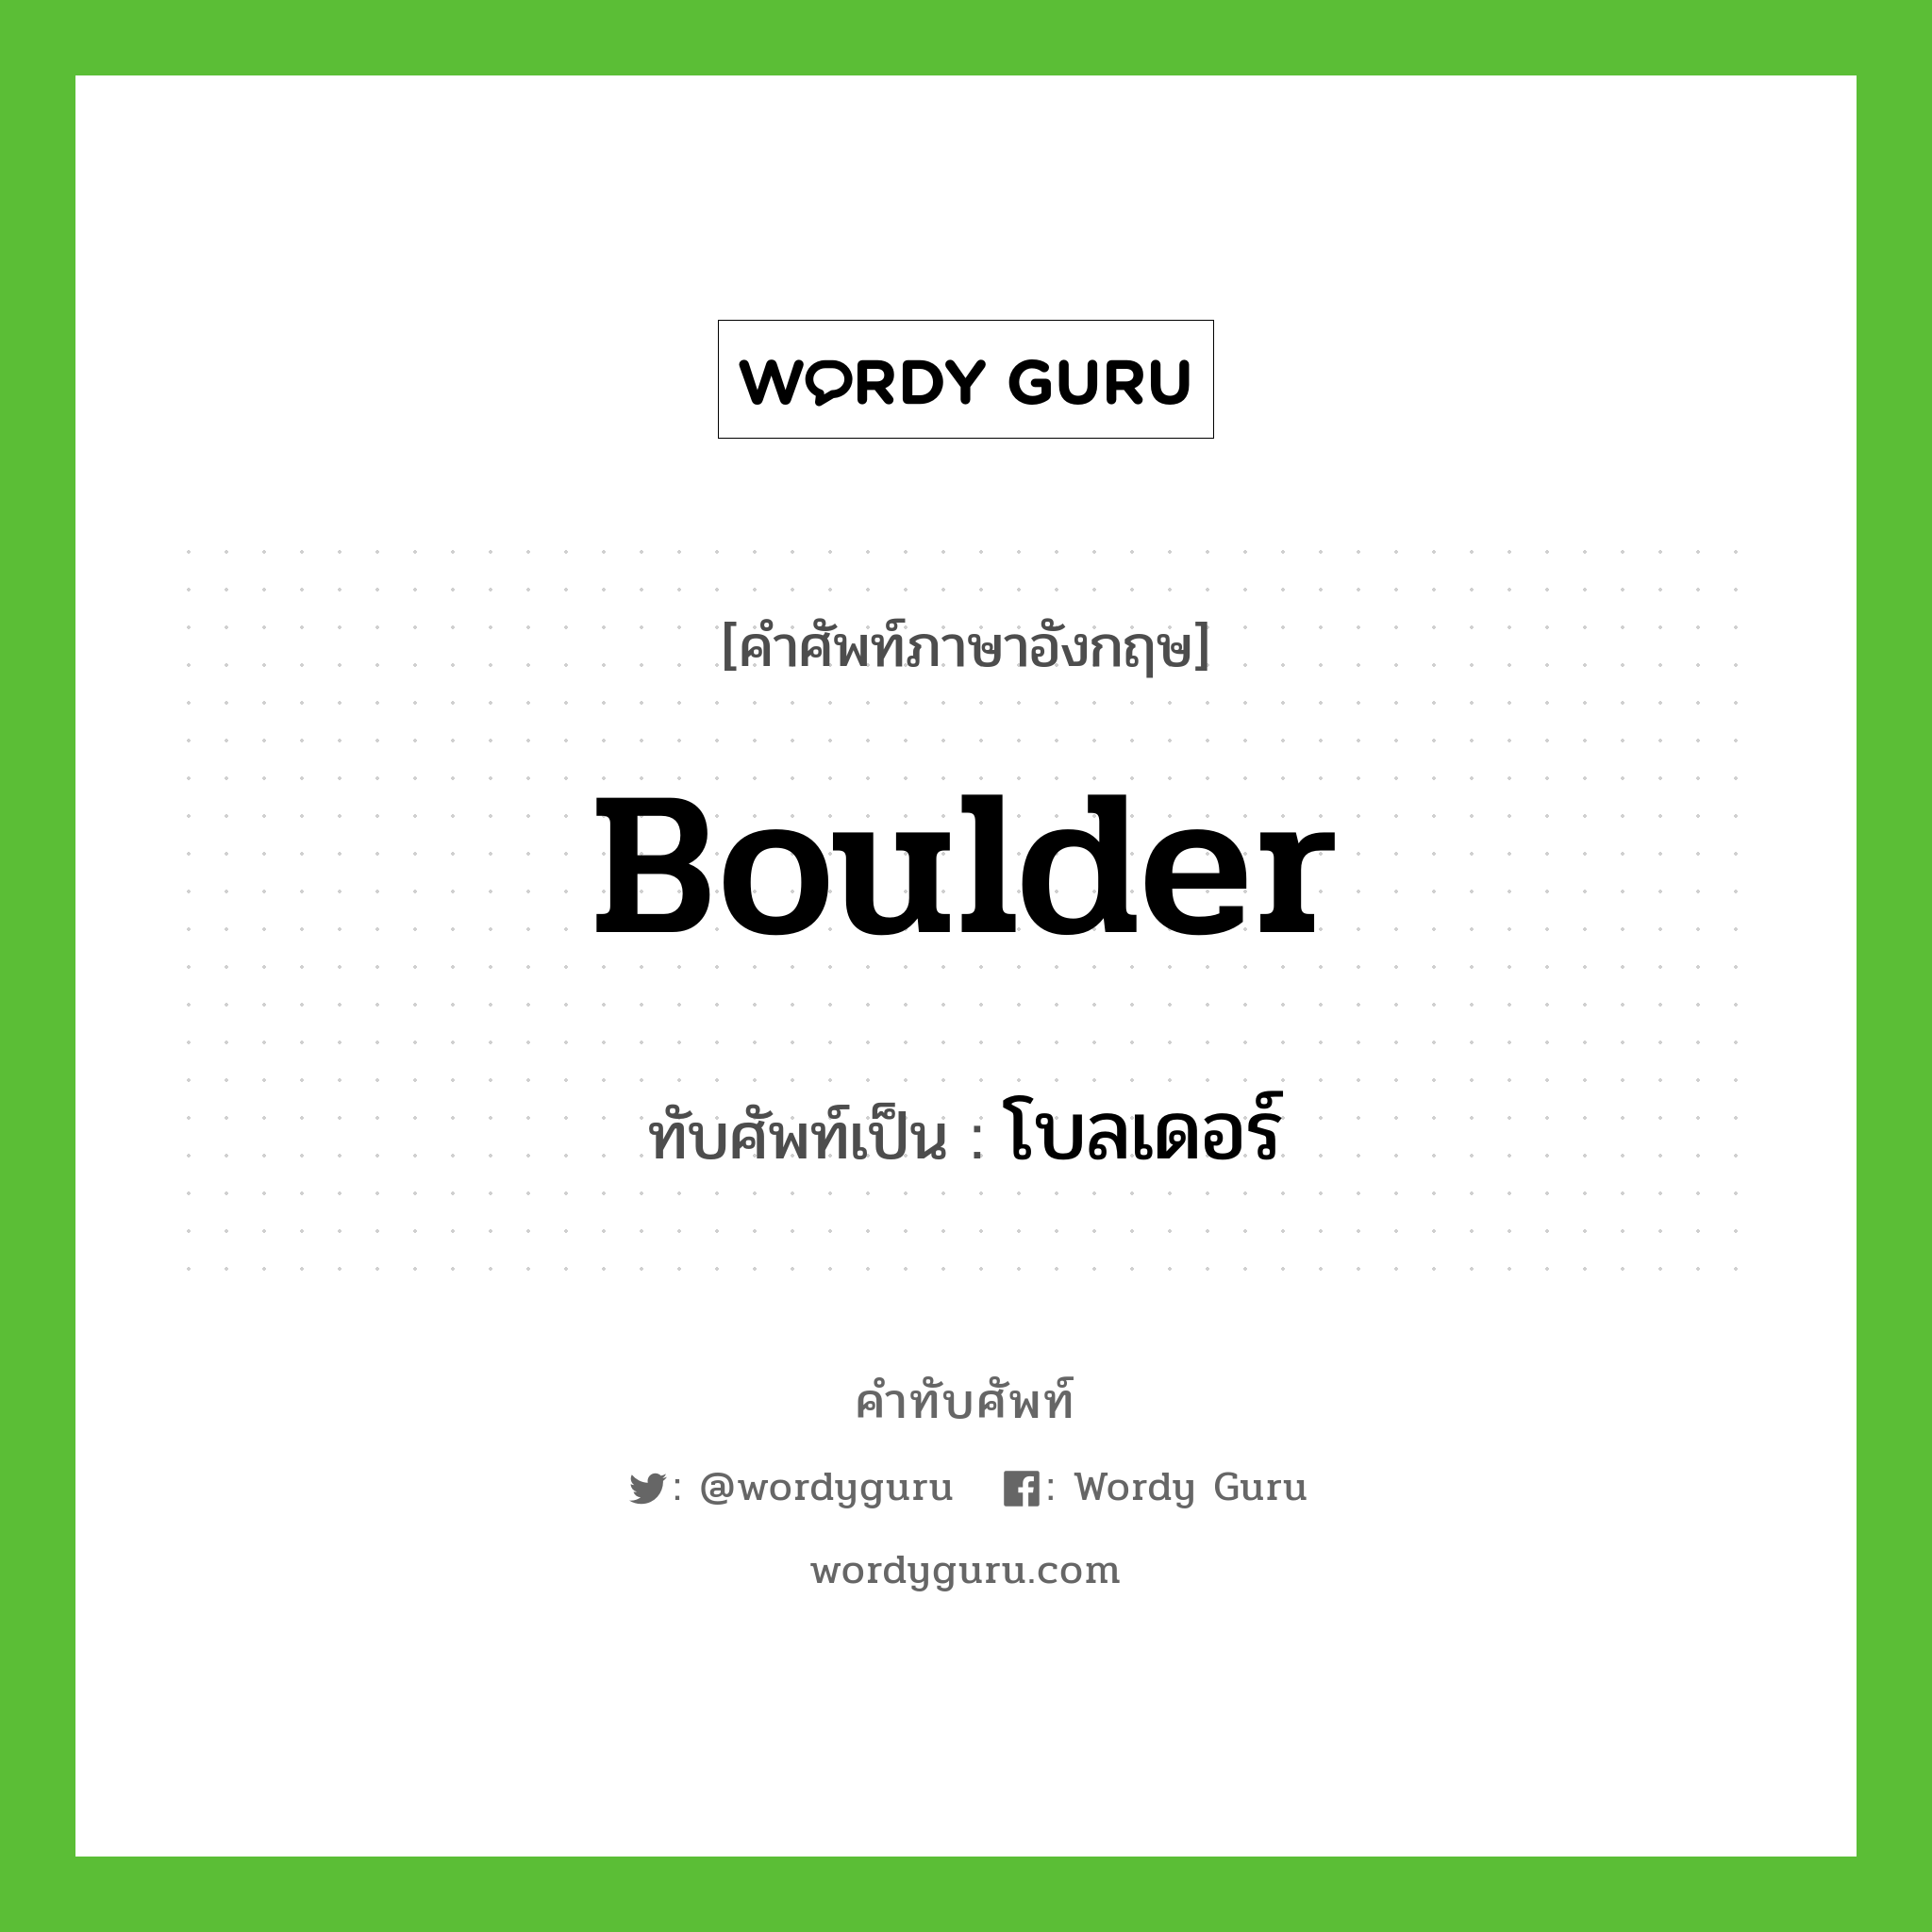 boulder เขียนเป็นคำไทยว่าอะไร?, คำศัพท์ภาษาอังกฤษ boulder ทับศัพท์เป็น โบลเดอร์